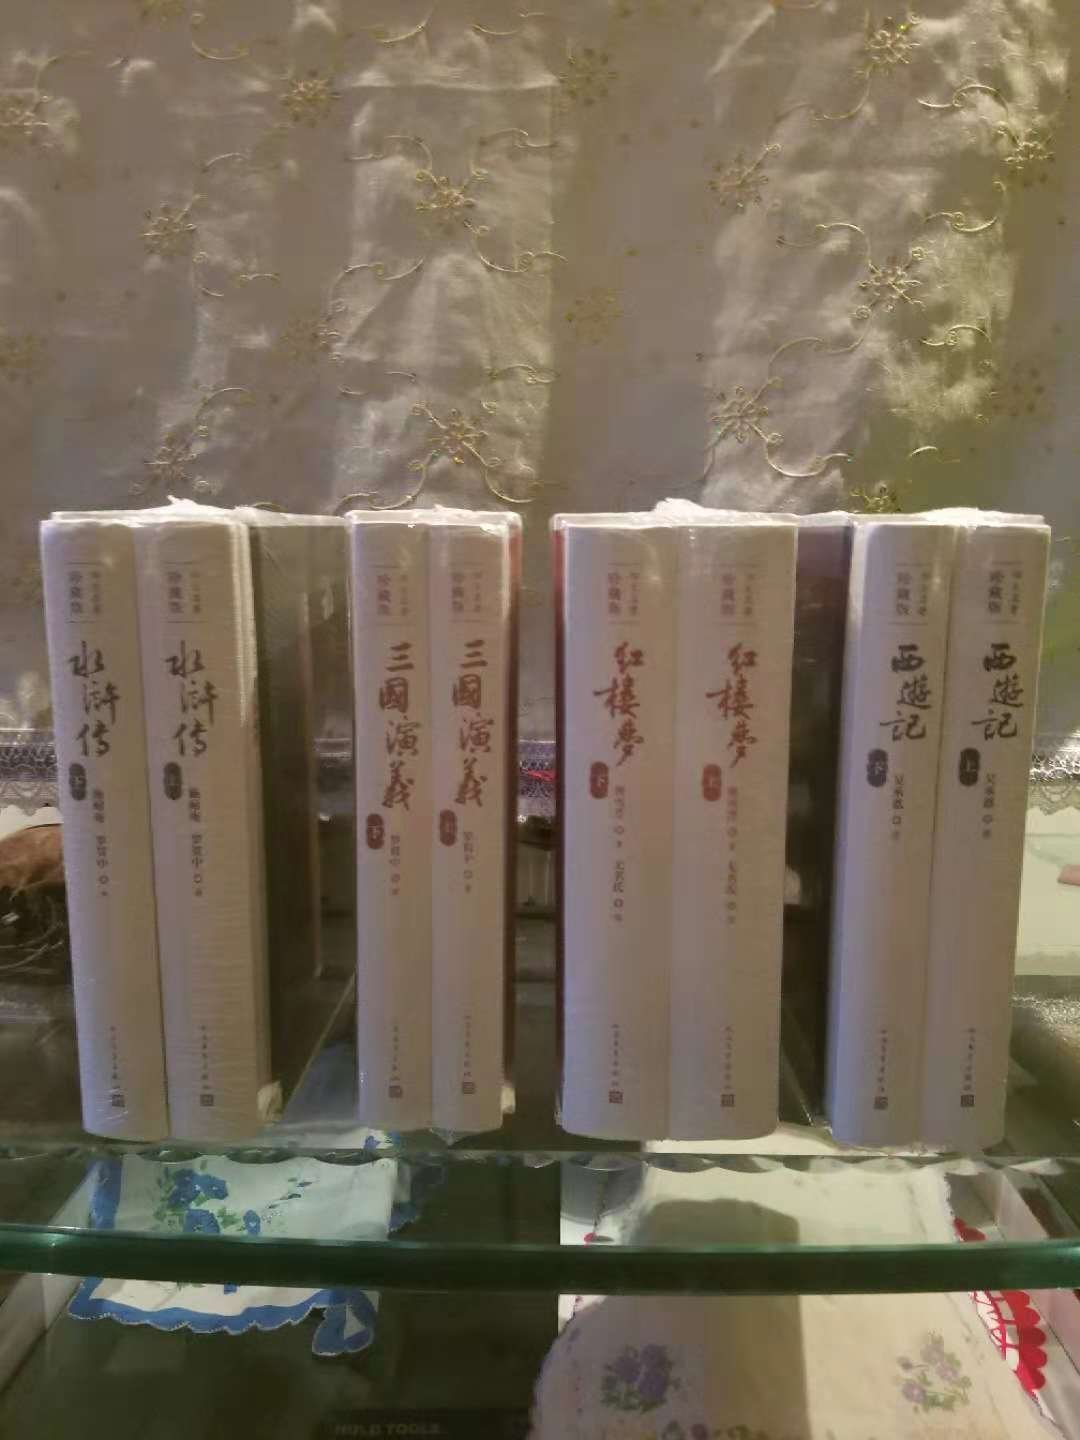 中国古典长篇小说四大名著，简称四大名著，是指《水浒传》、《三国演义》、《西游记》、《红楼梦》（按照成书顺序）这四部巨著。四大名著是中国文学史中的经典作品，是世界宝贵的文化遗产。此四部巨著在中国文学史上的地位是难分高低的，都有着极高的文学水平和艺术成就，细致的刻画和所蕴含的深刻思想都为历代读者所称道，其中的故事、场景、人物已经深深地影响了中国人的思想观念、价值取向。可谓中国文学史上的四座伟大丰碑。